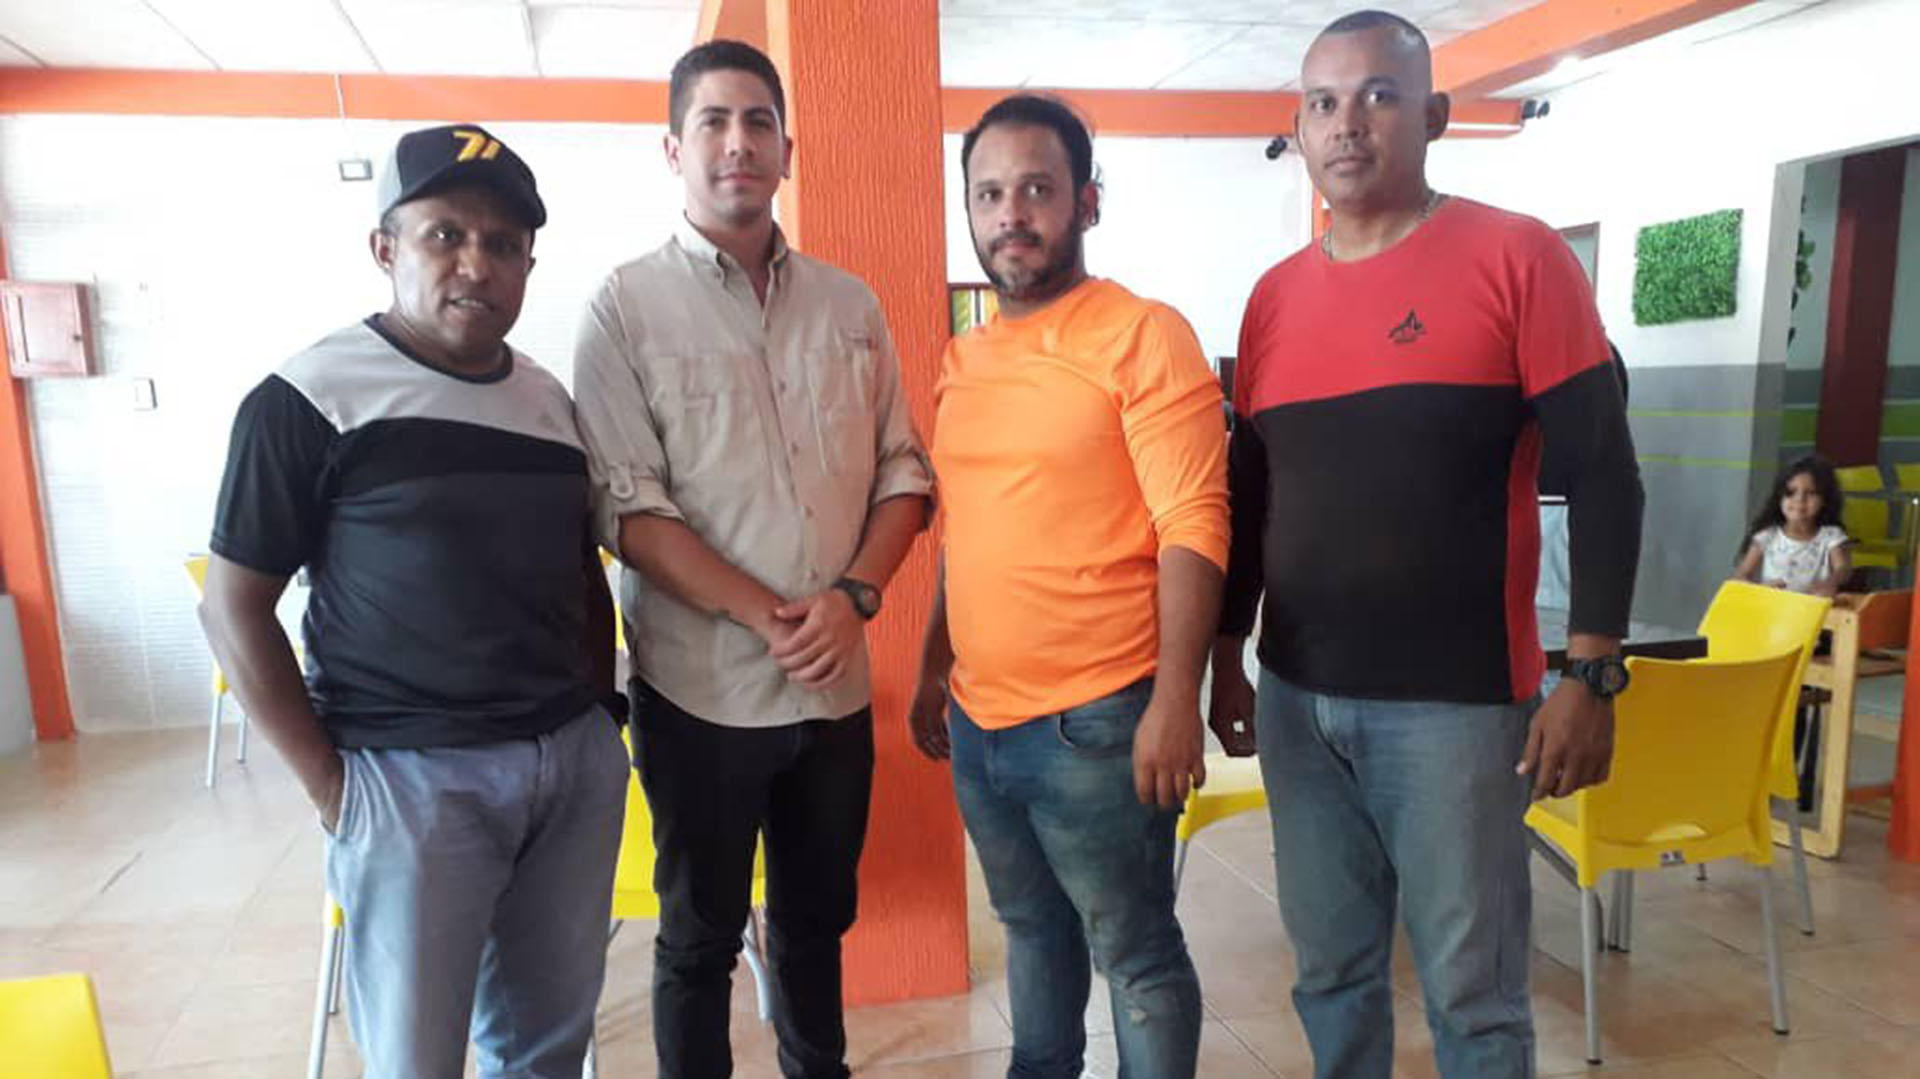 Los periodistas Luis Gonzalo Pérez y Rafael Hernández habían sido detenidos por la Guardia Nacional Venezolana en el estado fronterizo Apure